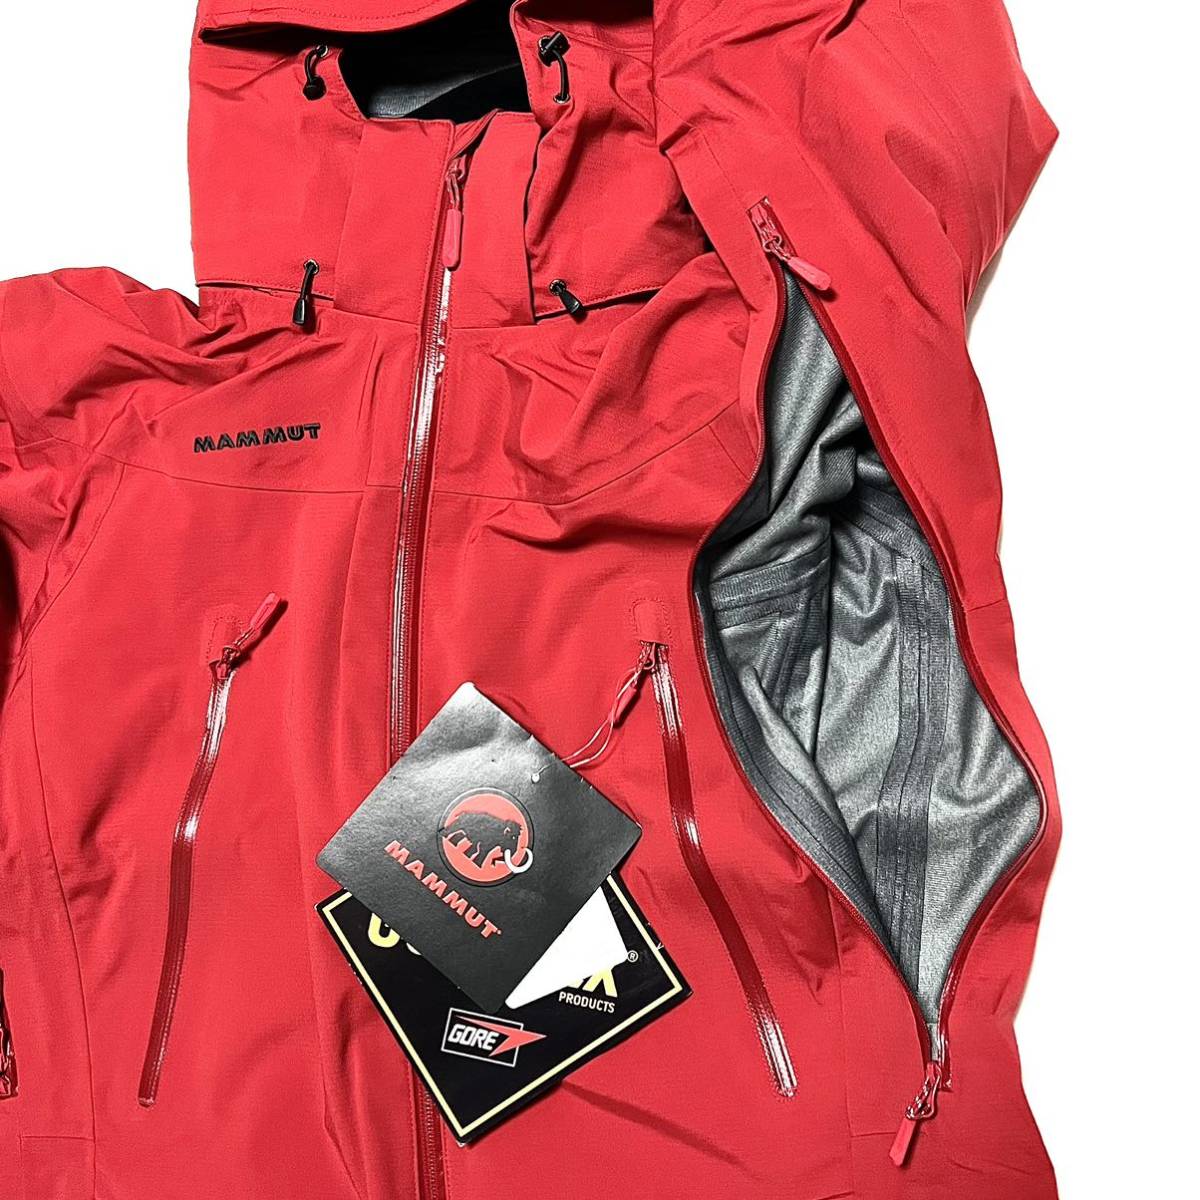 XL 新品 マムート 防水 ゴアテックス アイスフォール 赤 ジャケット 雪 GORETEX ハイキング スキー スノボー スノーボード ゴア  GORE 登山